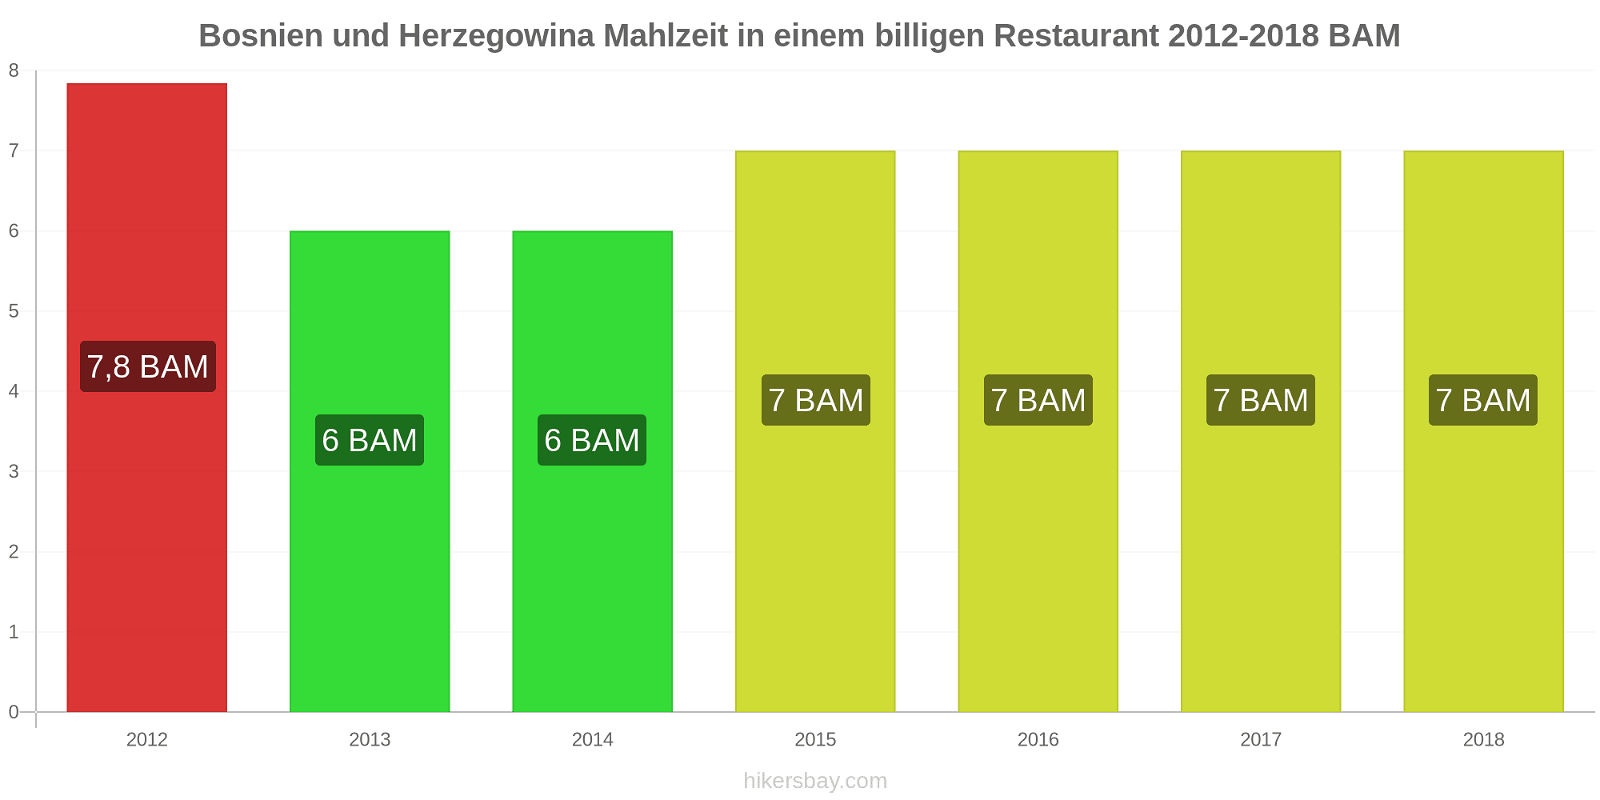 Bosnien und Herzegowina Preisänderungen Mahlzeit in einem billigen Restaurant hikersbay.com